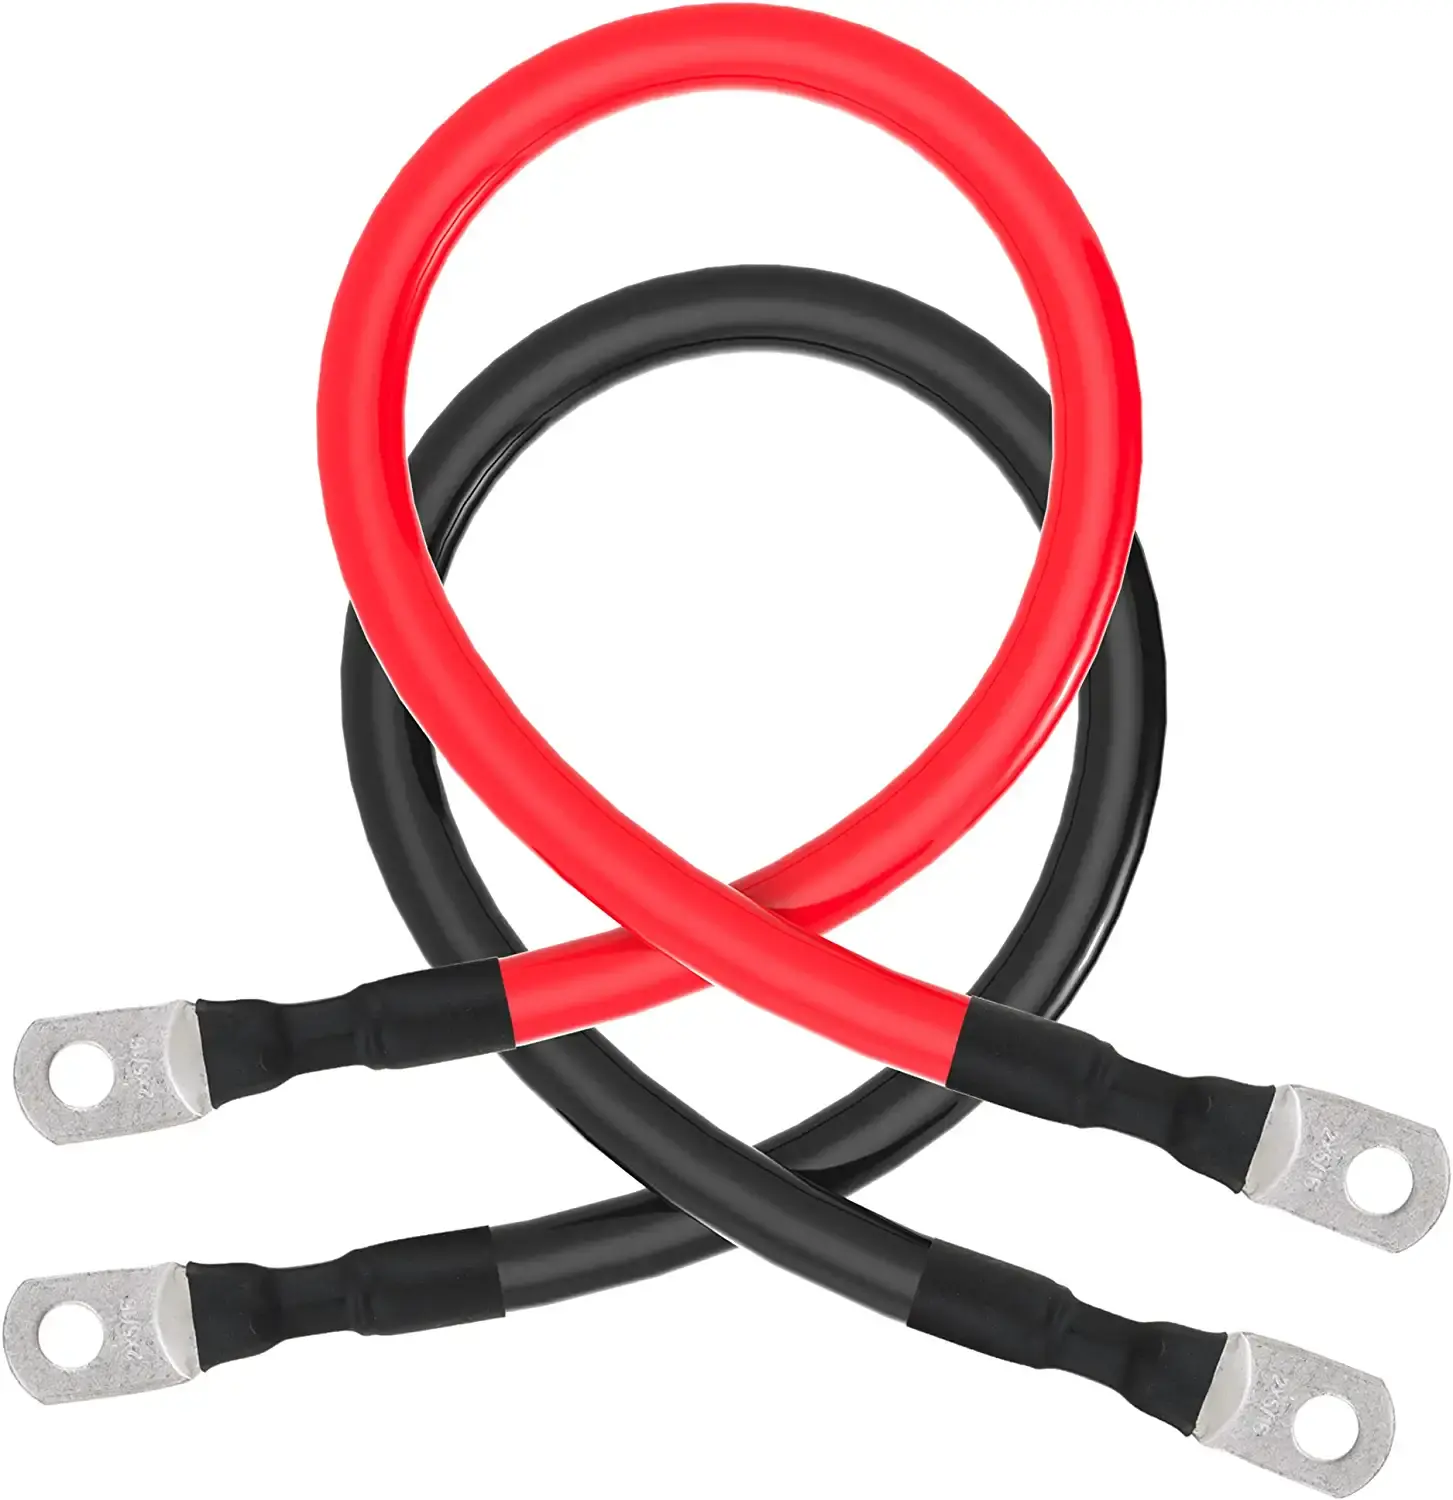 Набор кабелей для аккумуляторов универсального типа с клеммами, наконечниками (2 шт., красный + черный) для мотоциклов, автомобилей, морских, солнечных, AT